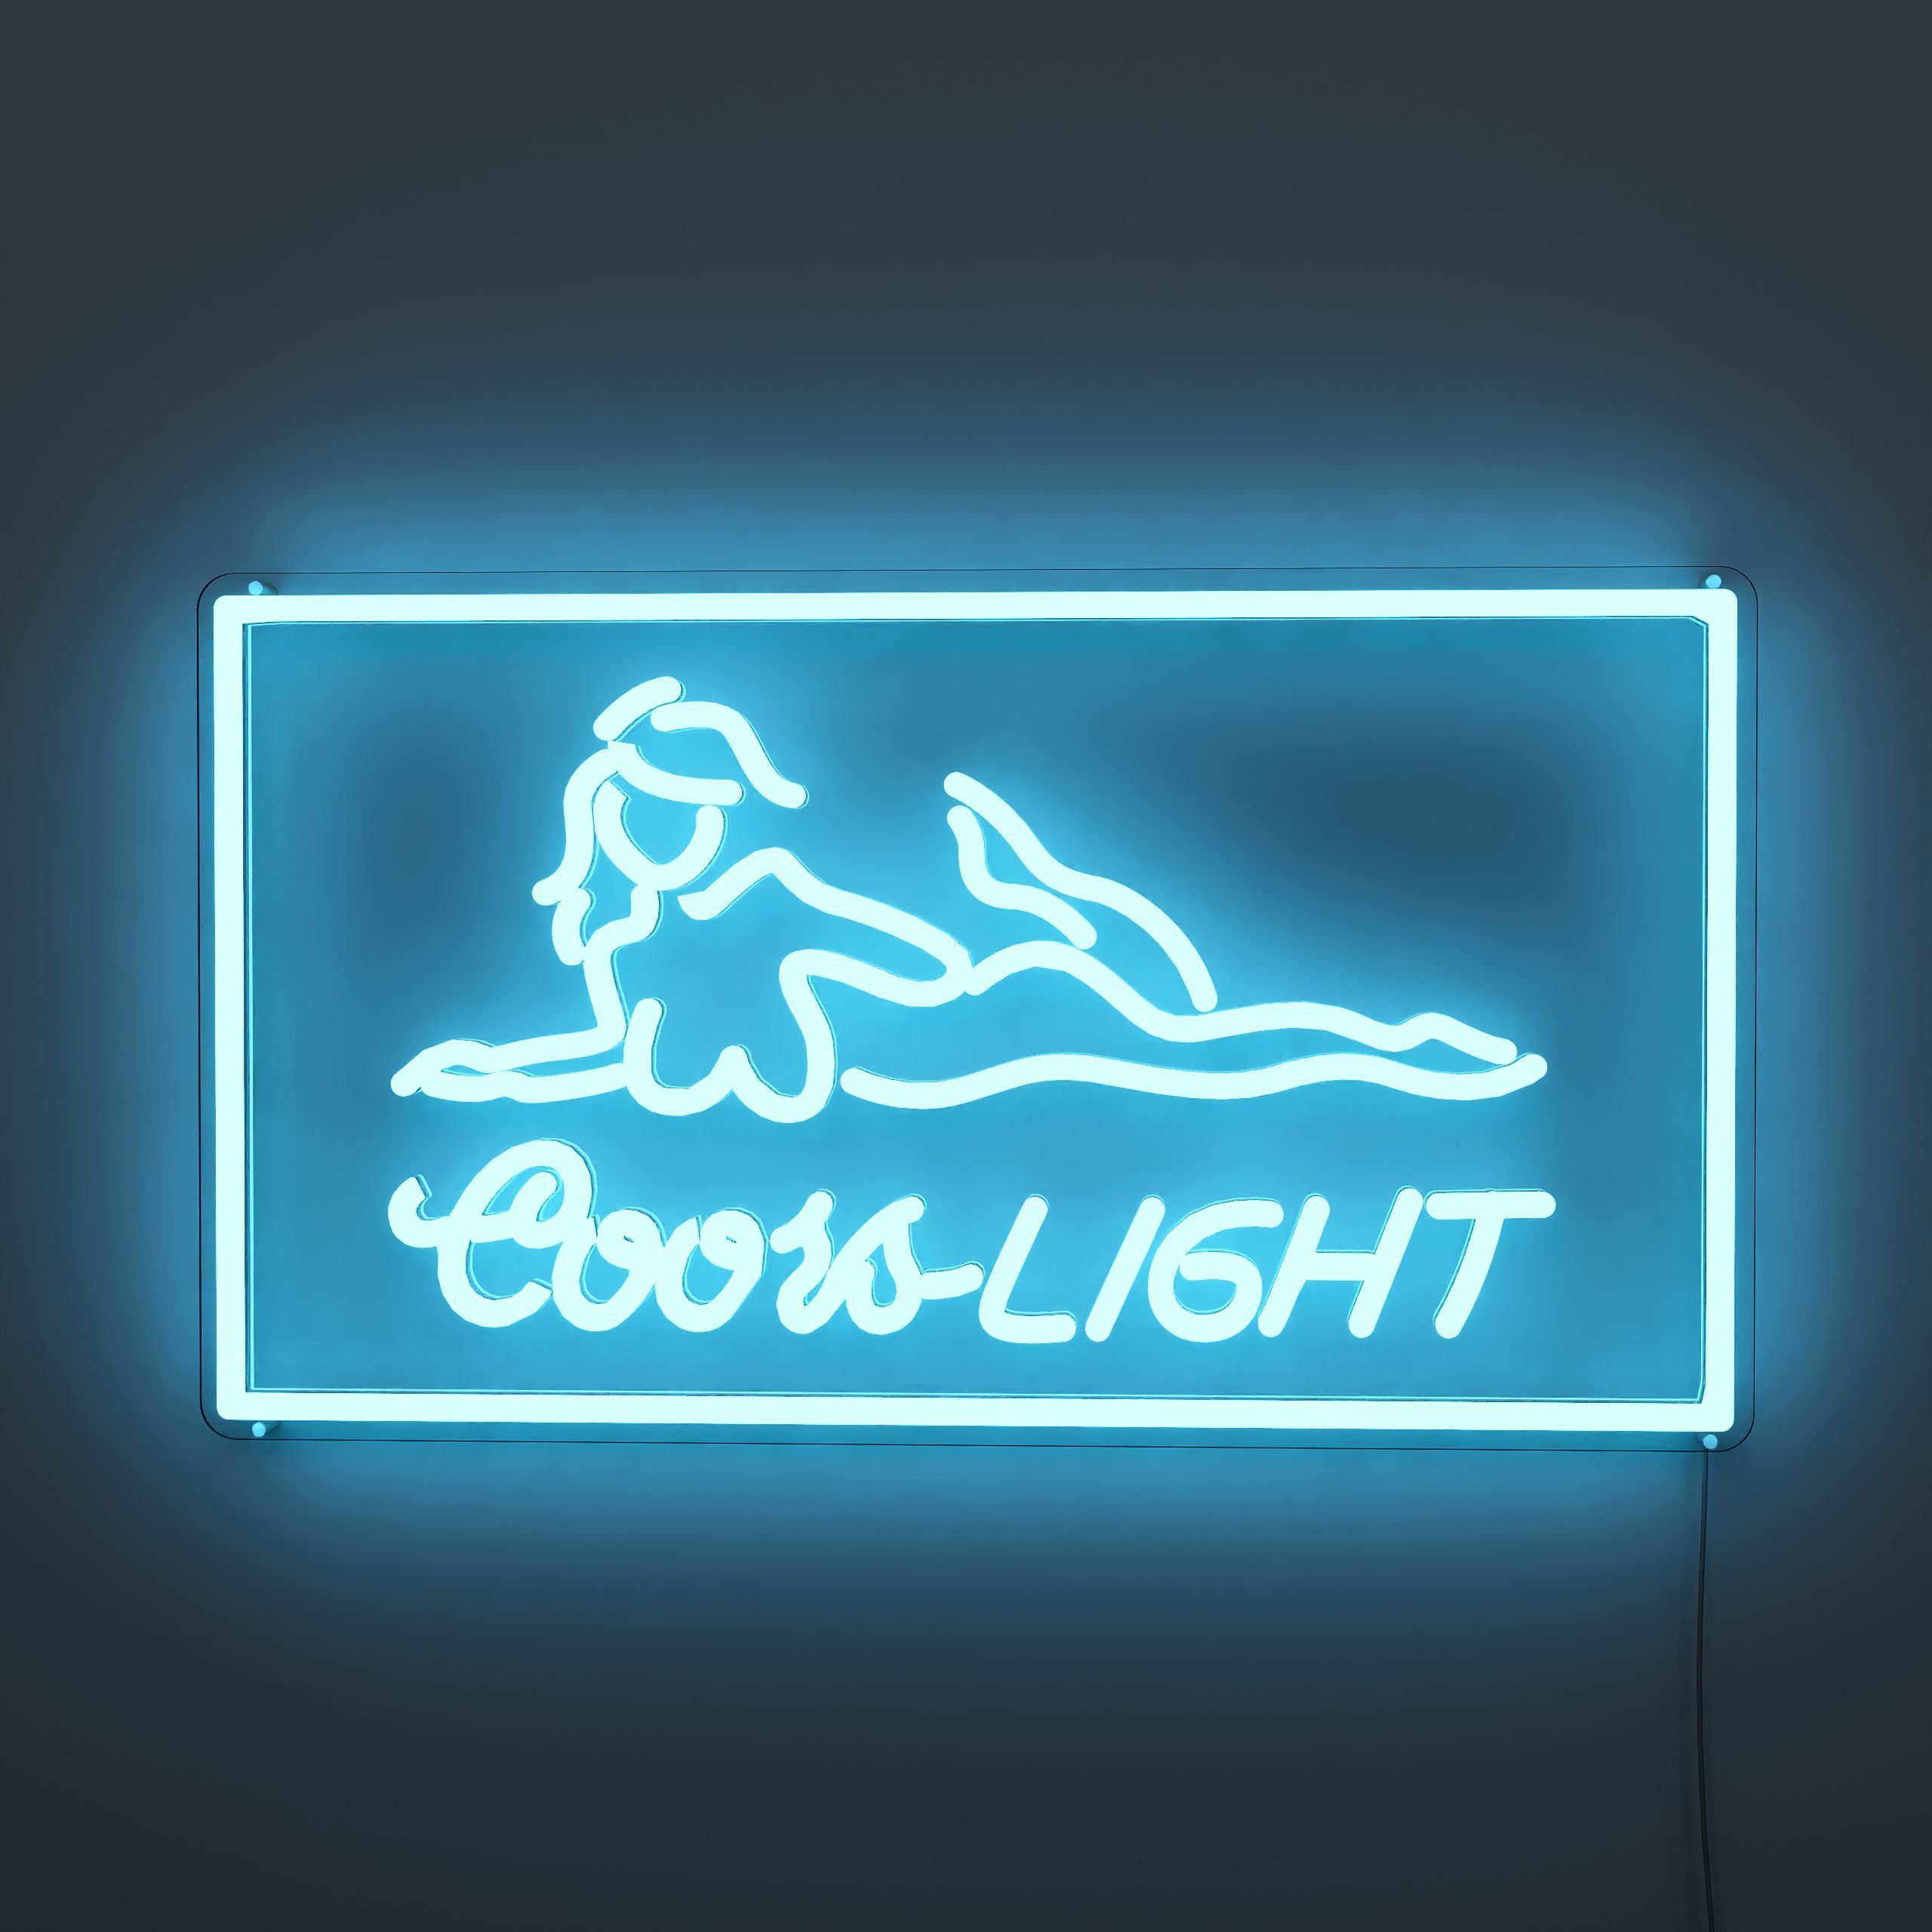 busch-light-neon-sign-DarkBlue-Neon-sign-Lite